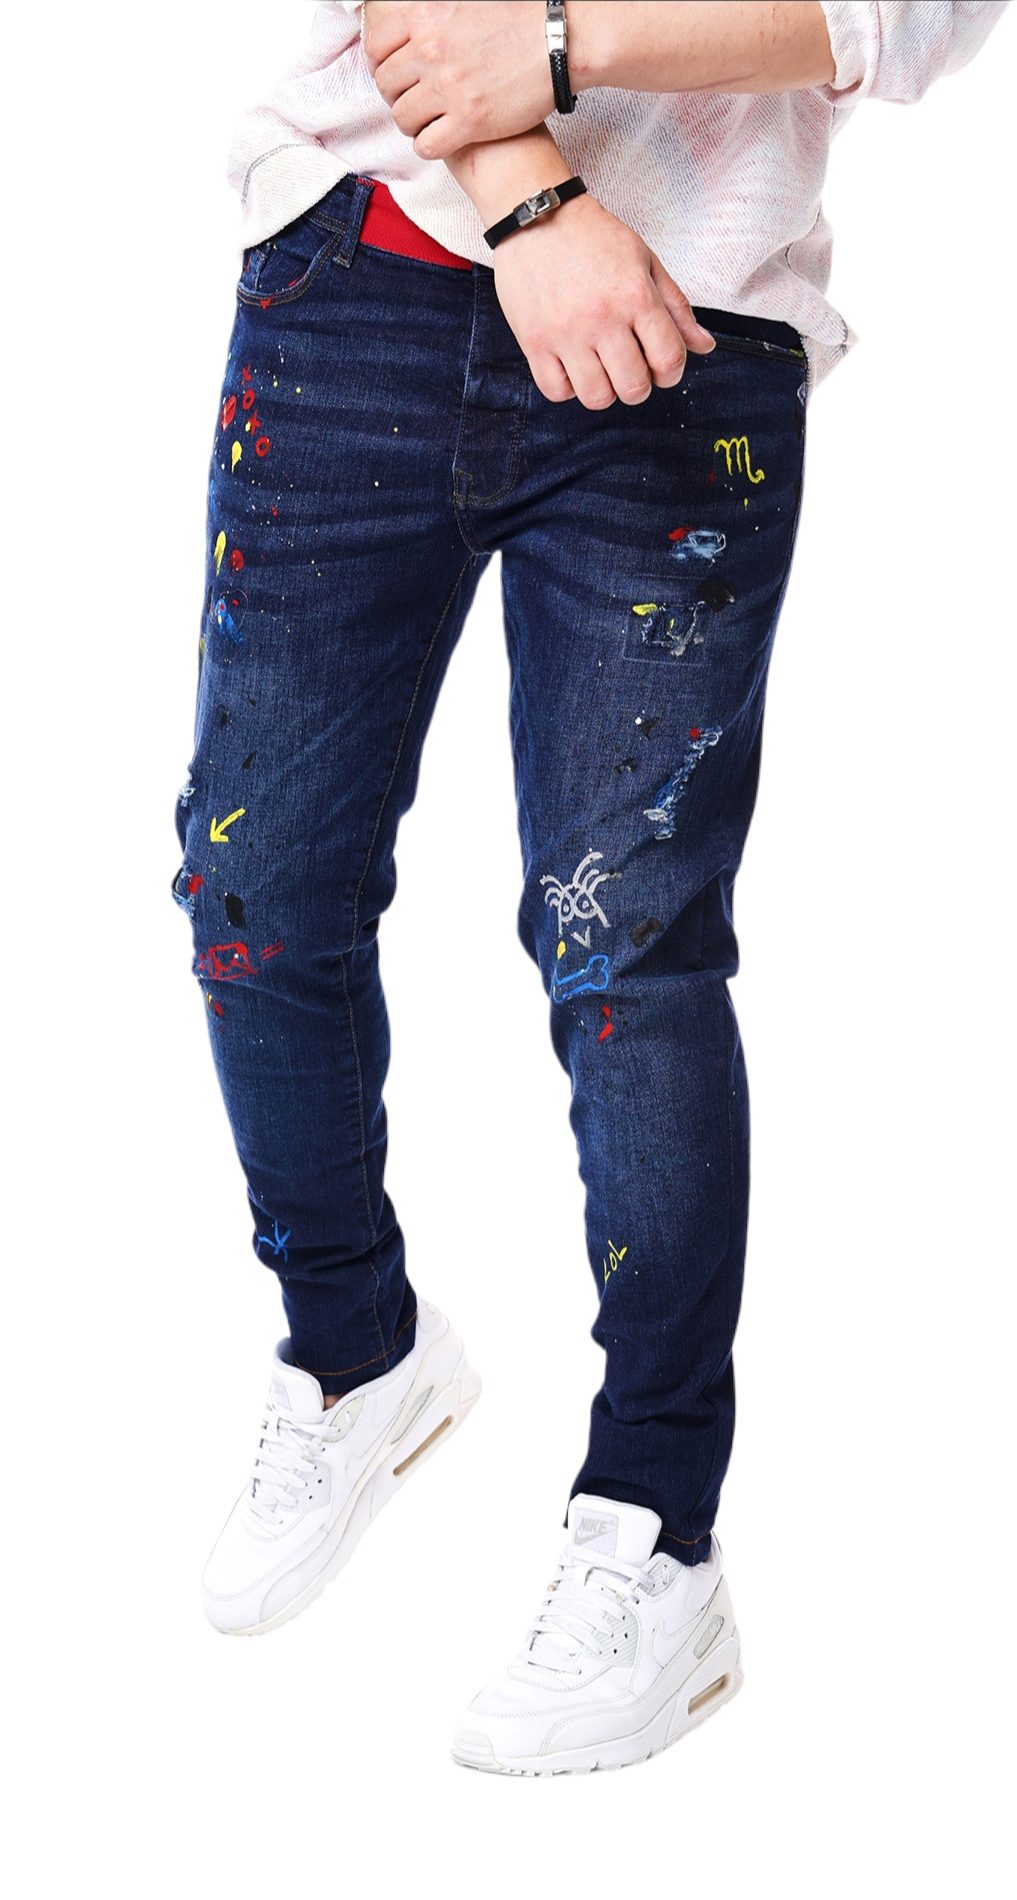 Jeans Custom Fit - editie limitata MJL5408